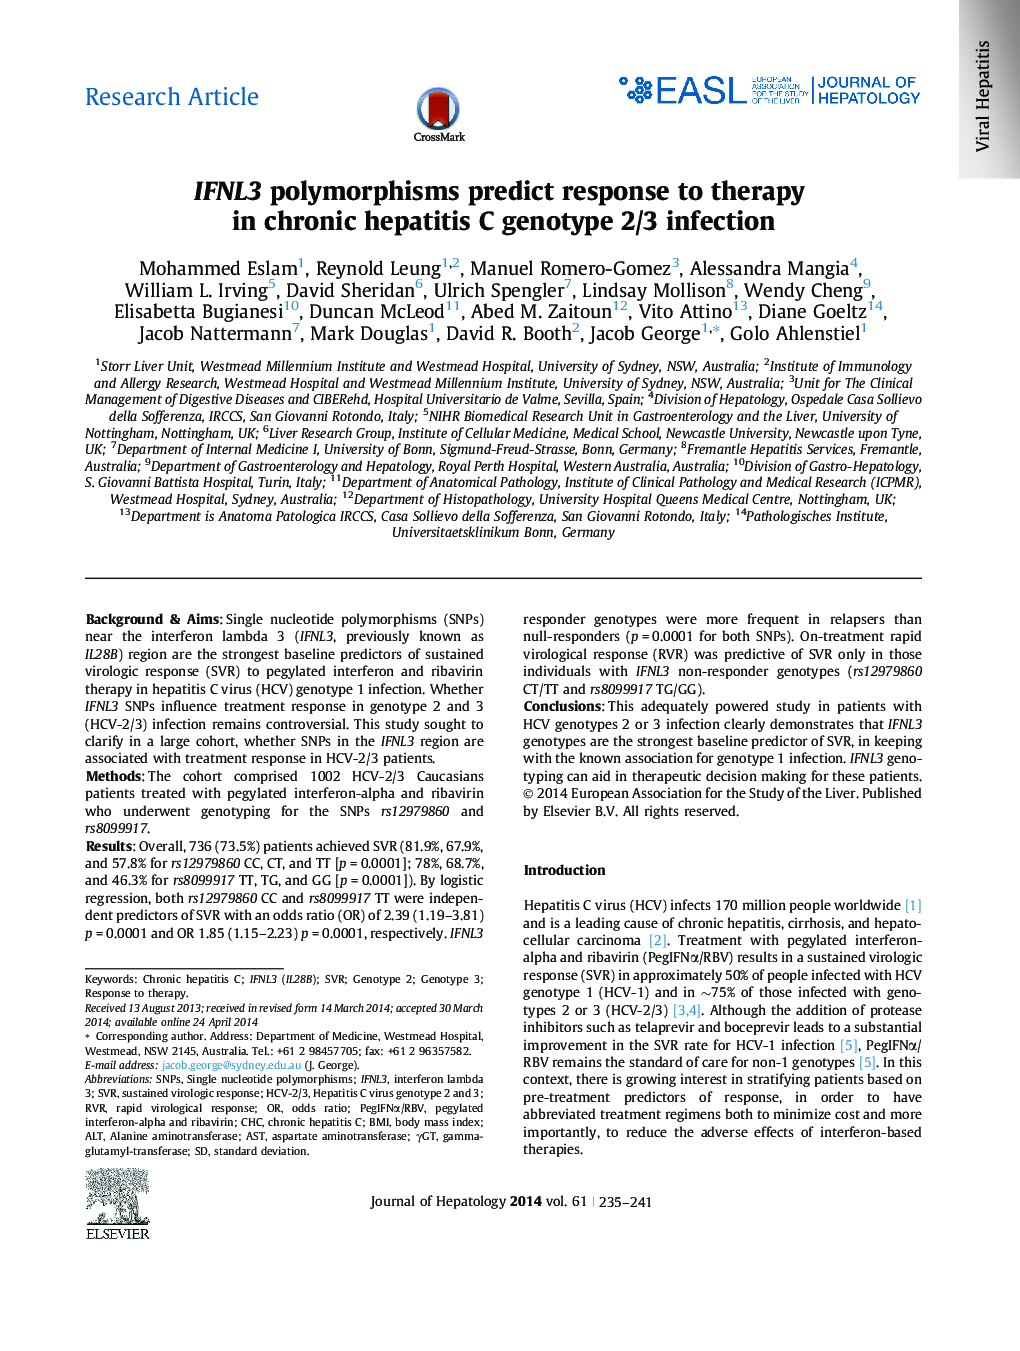 پلی مورفیسم مقاله ایفا لیپوپروتئین ها پیش بینی پاسخ به درمان در عفونت ژنومی 2/3 هپاتیت مزمن است 